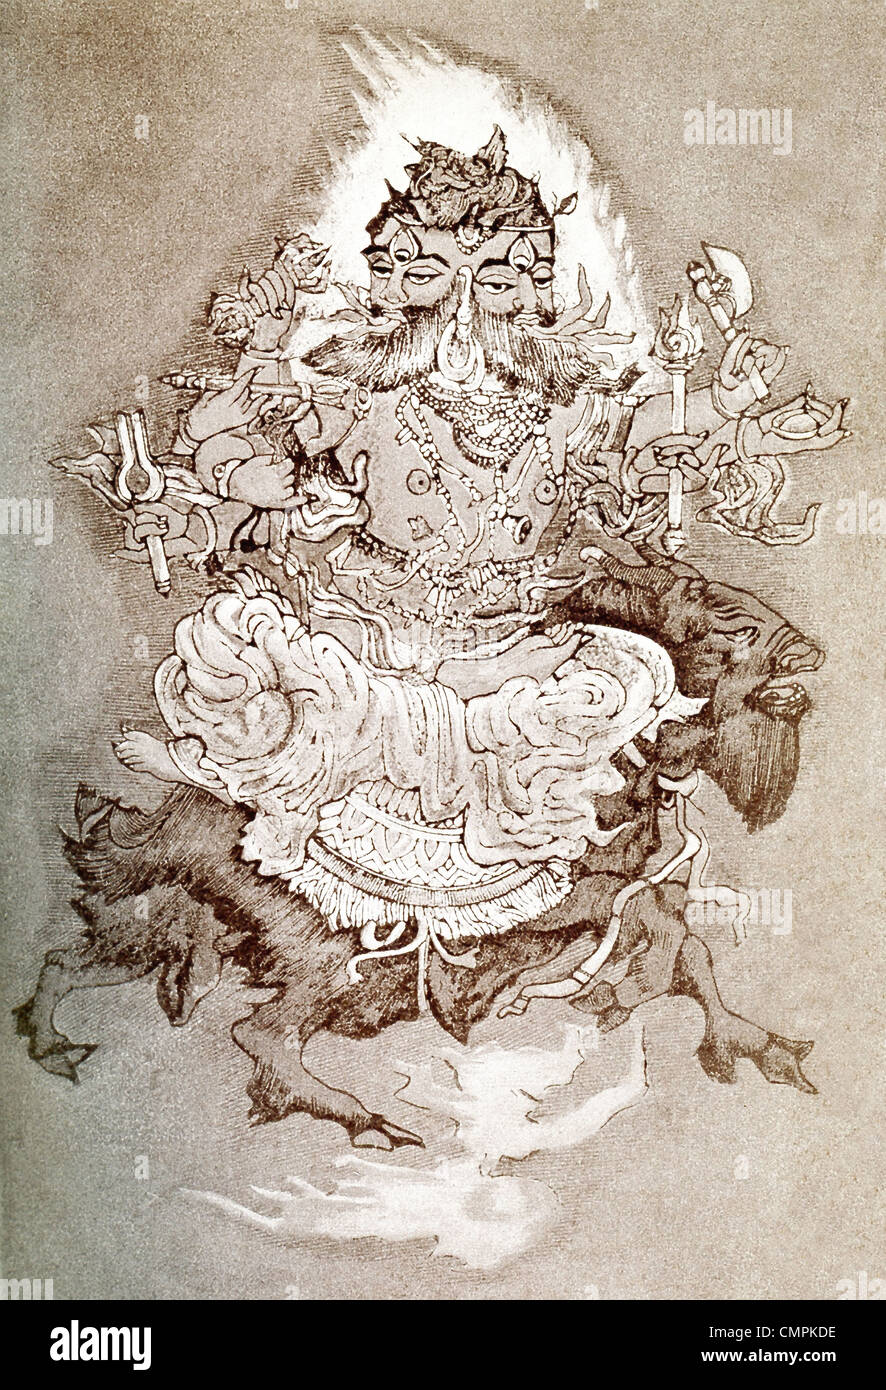 Agni è spesso considerato il più popolare dio del Rigveda. Egli è raffigurato con due teste, che simboleggia la sua doppia natura. Foto Stock